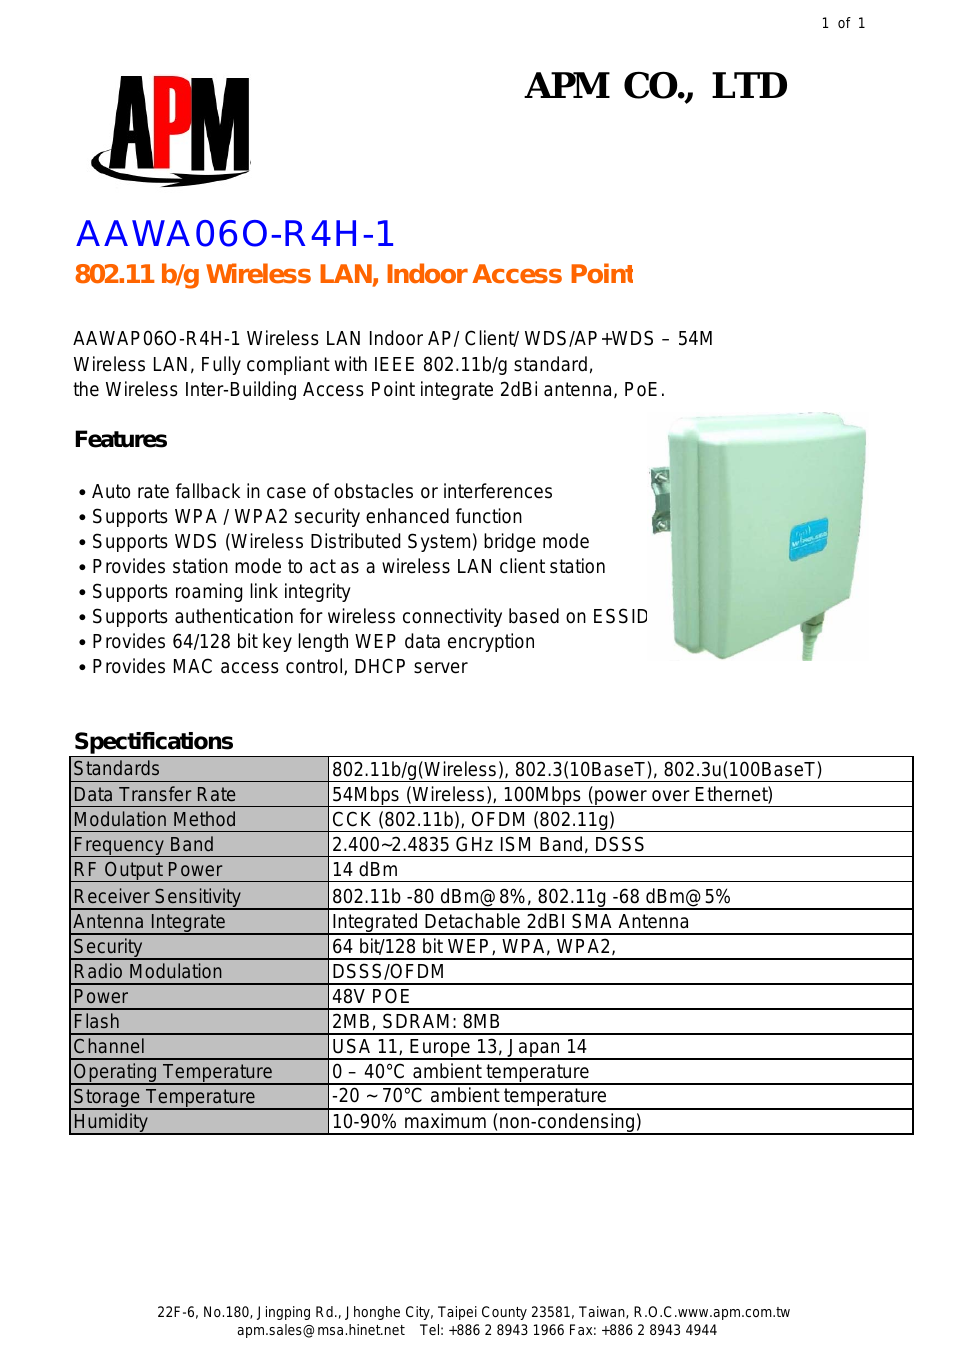 AAWA06O-R4H-1